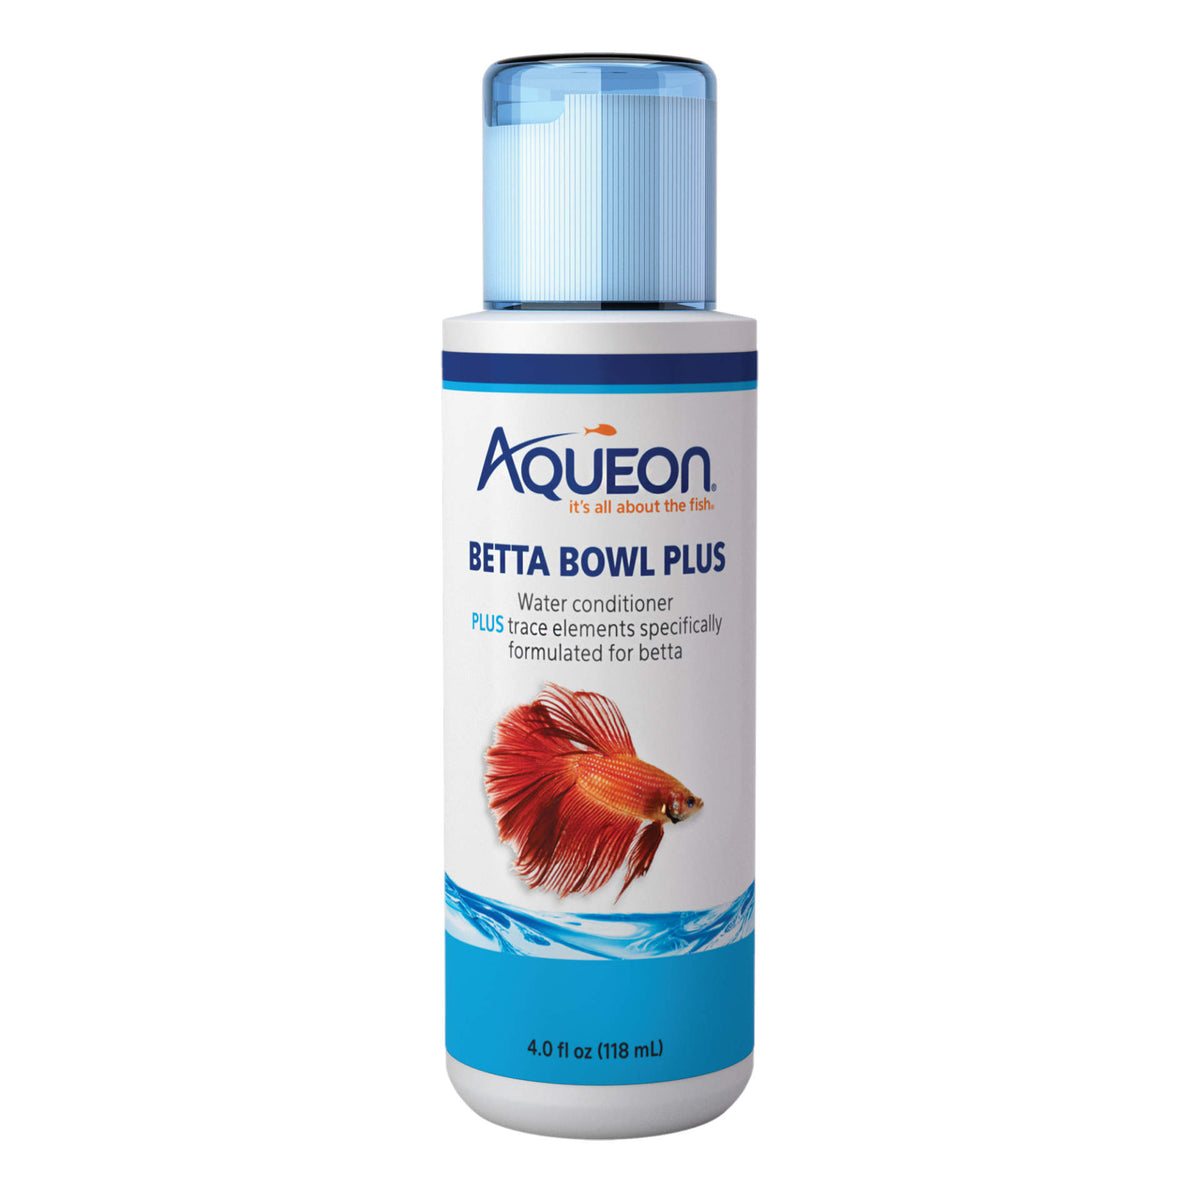 Aqueon - Betta Bowl Plus Conditioner